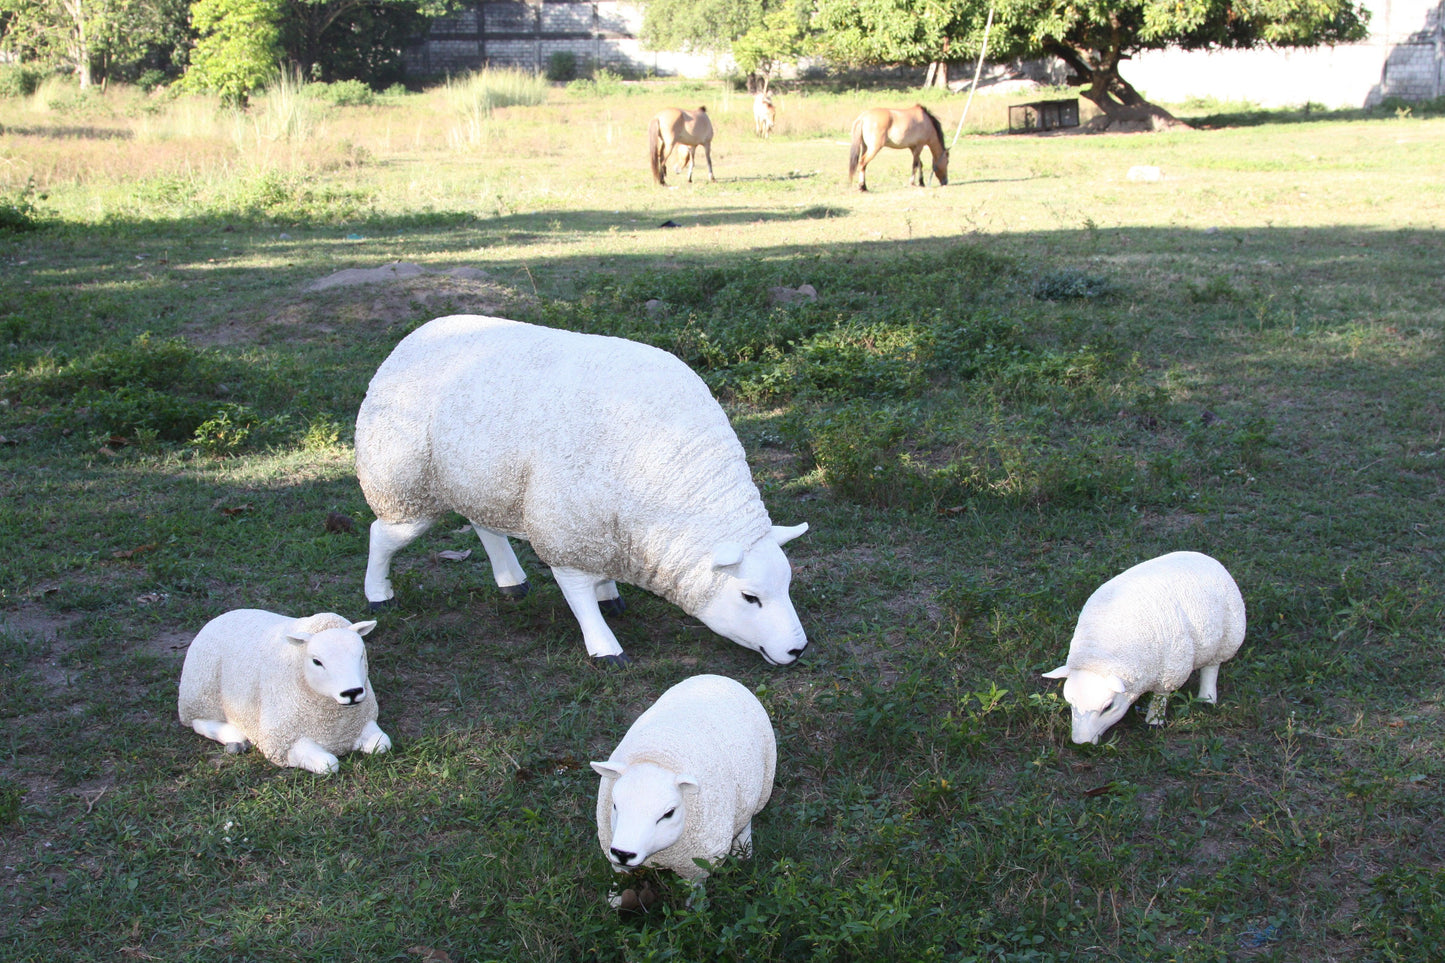 Texelaar Baby Sheep Head Up Statue - LM Treasures Prop Rentals 